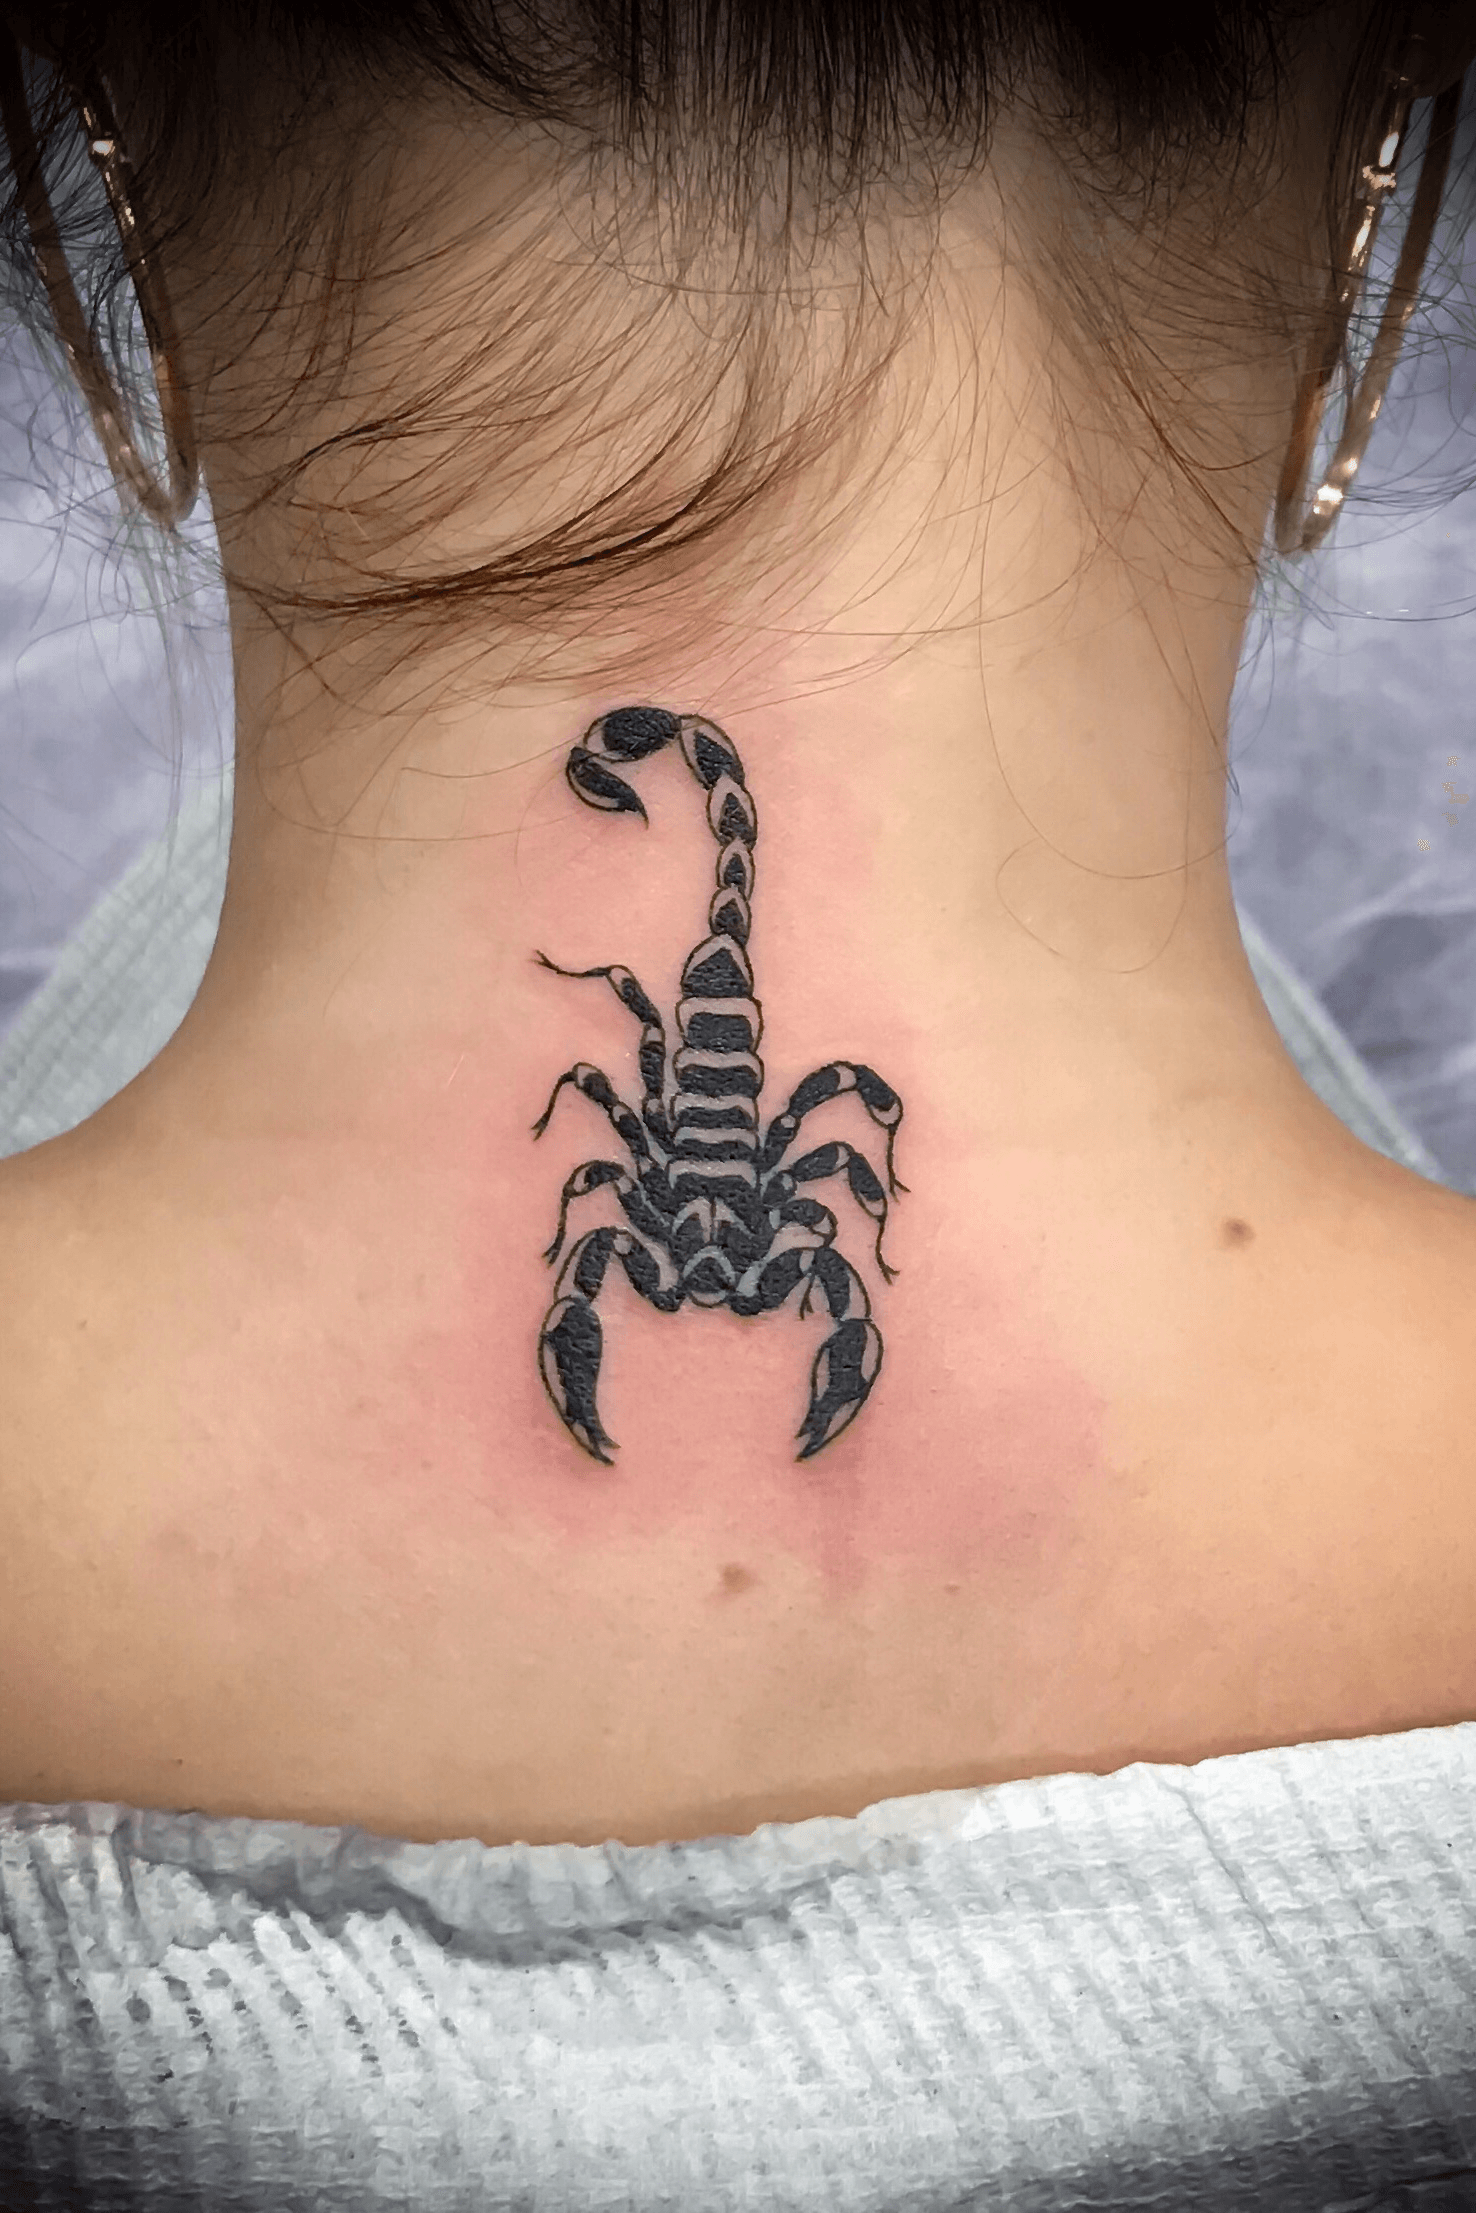 Cool Scorpion Tattoo Idea